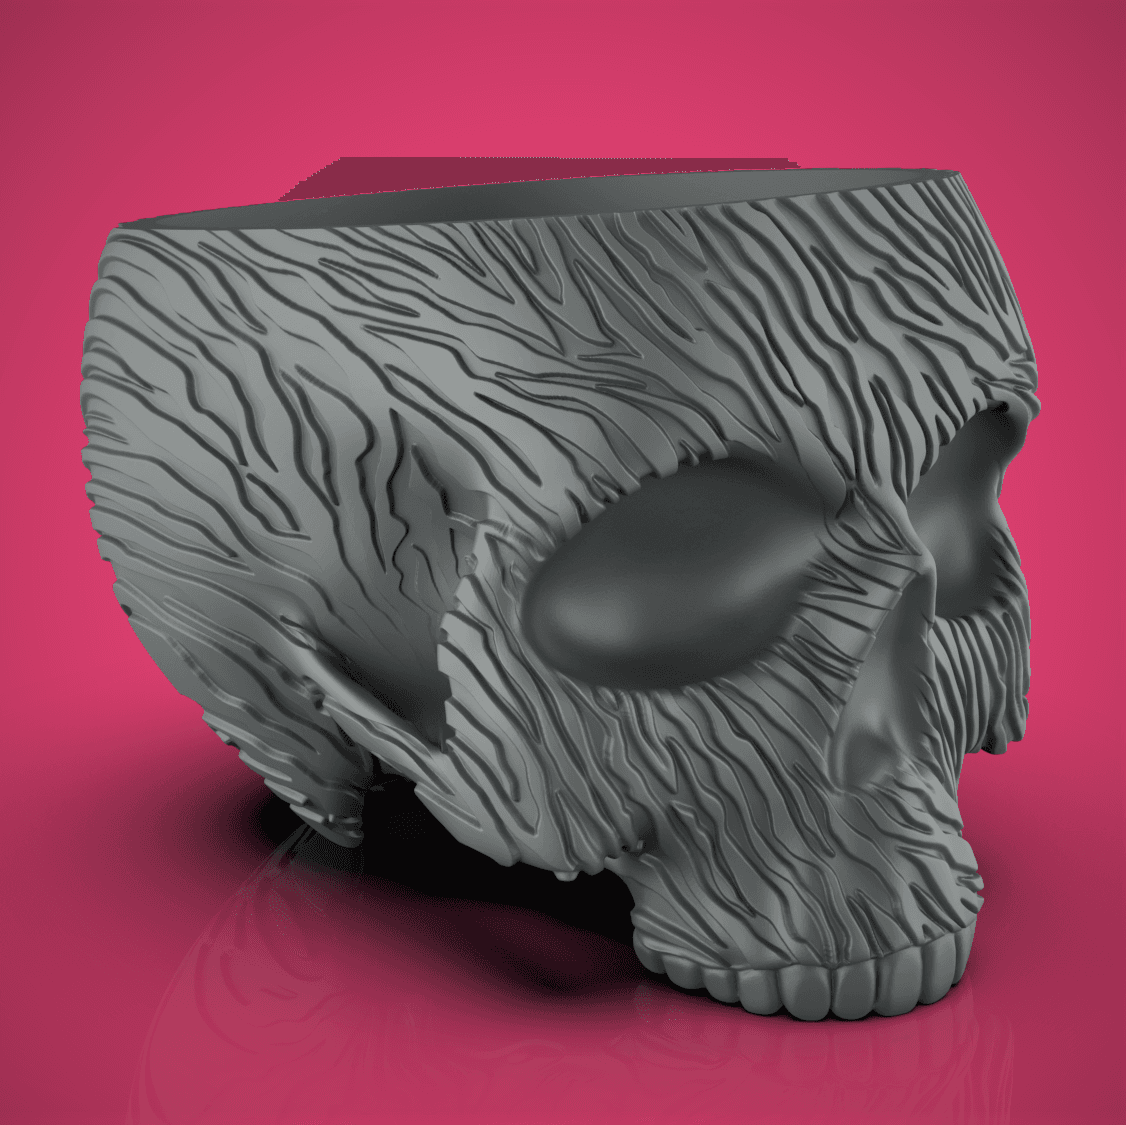 Zebra Skull Planter-Bowl 3d model